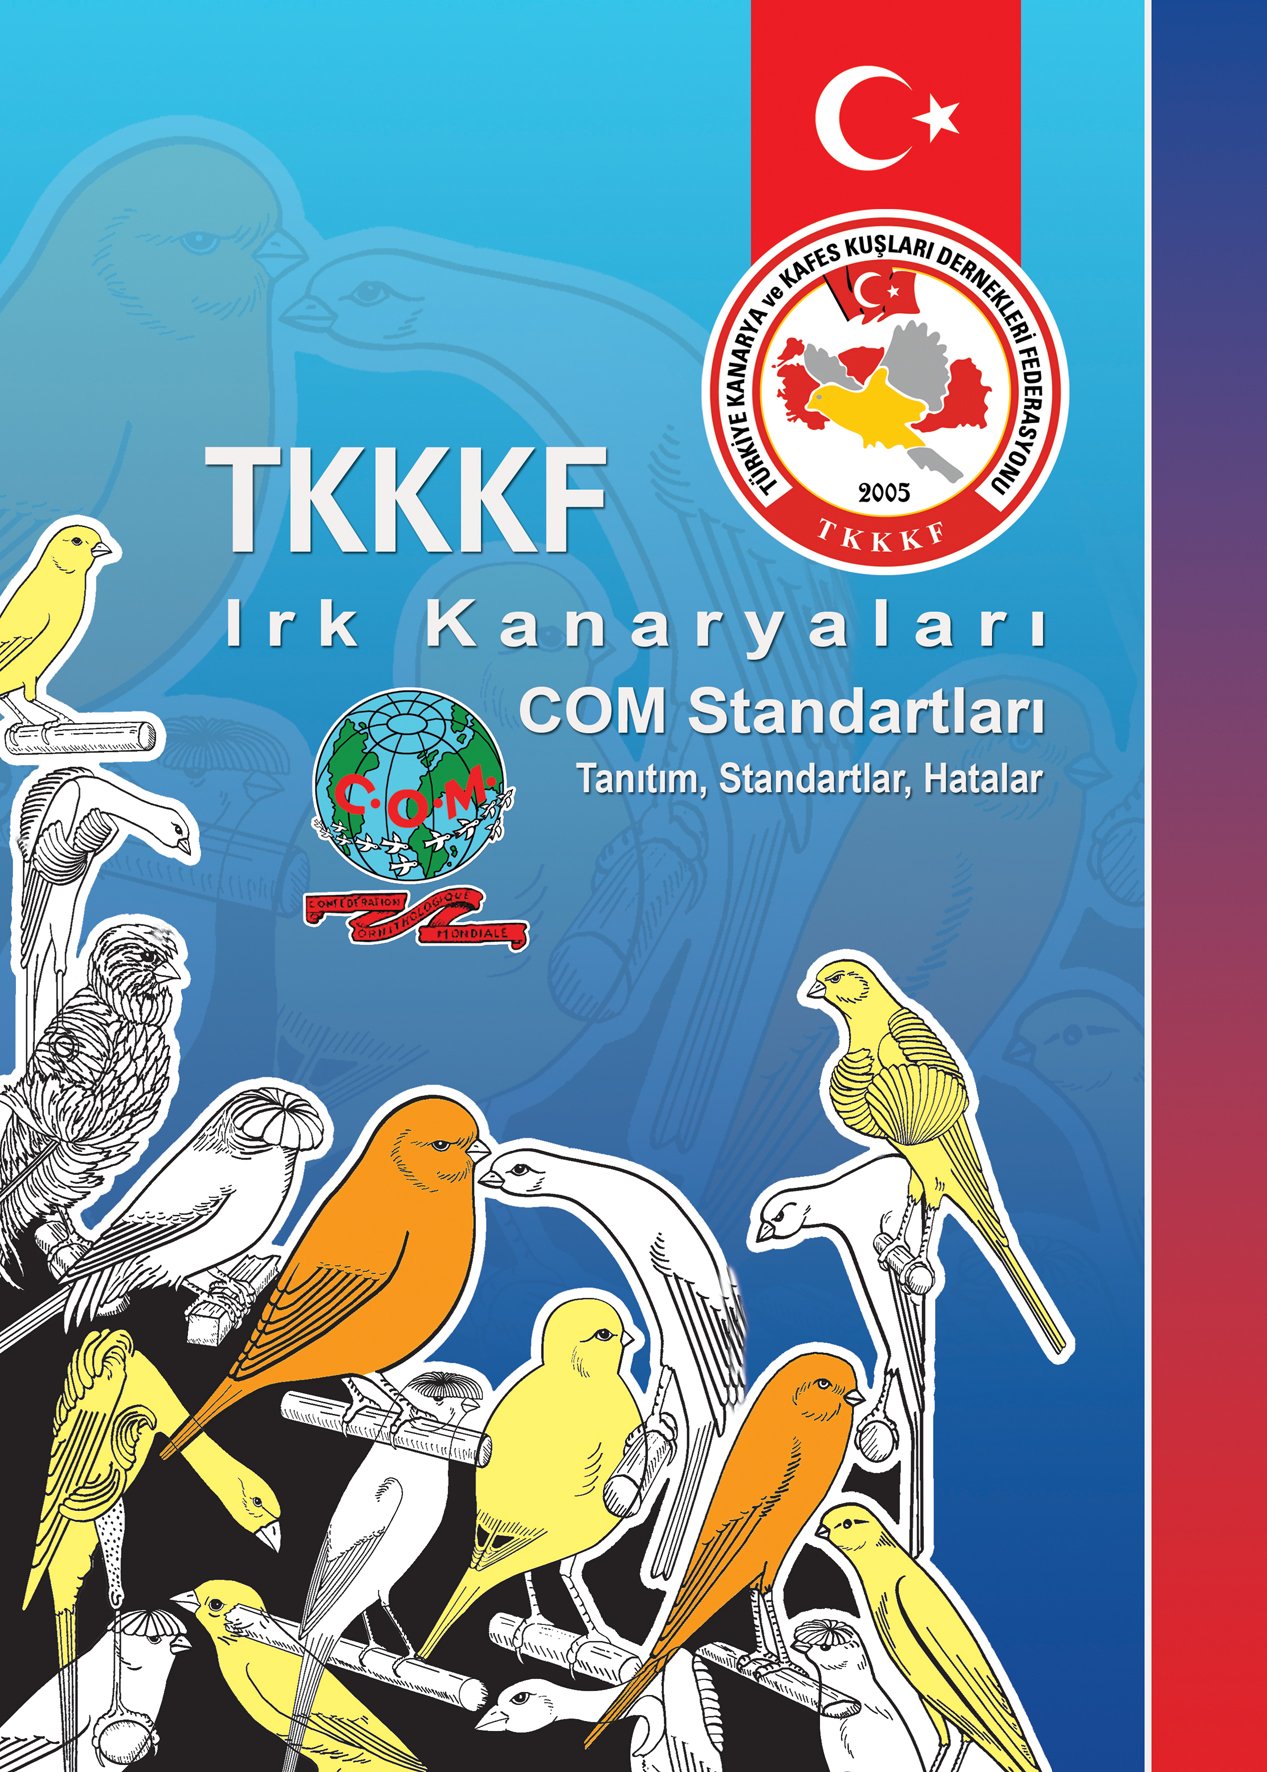 TKKKF Irk Kanaryaları COM Standartları Kitabı